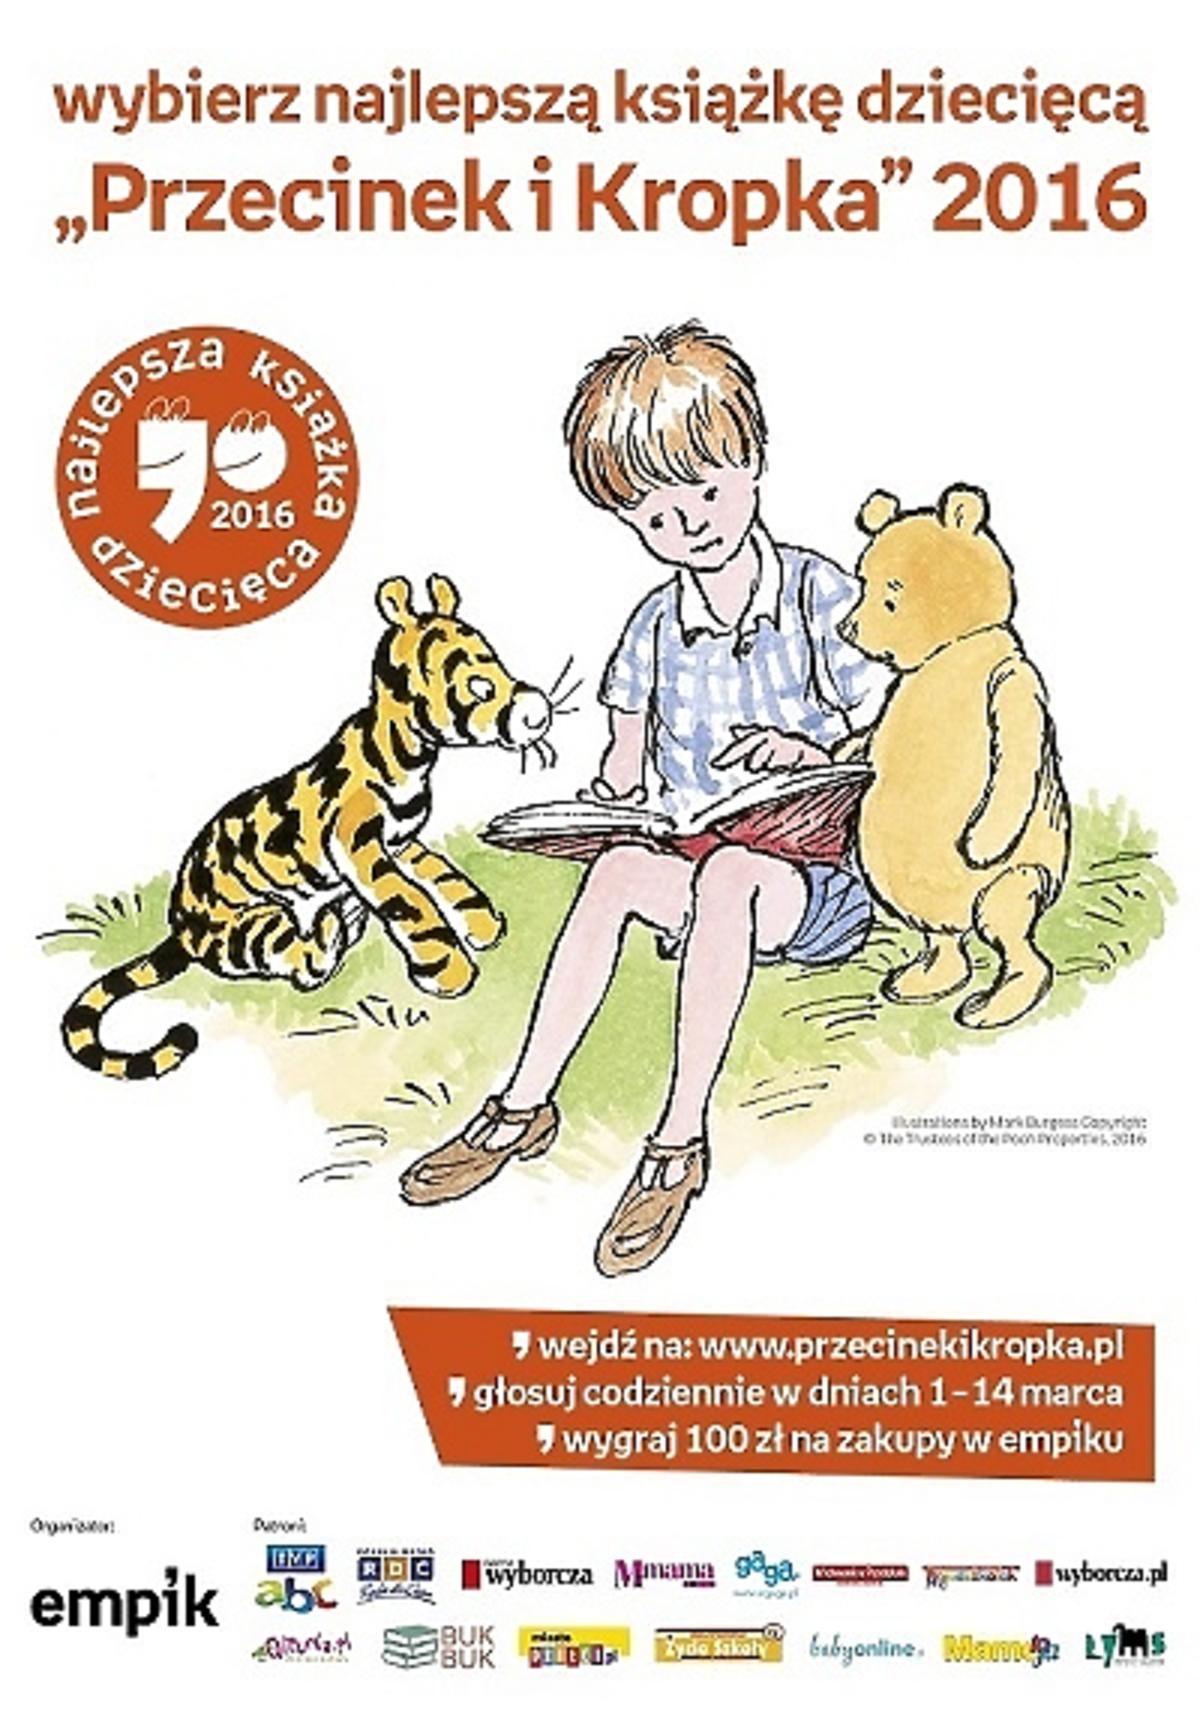 Przecinek i kropka: konkurs na najlepszą książkę dla dzieci